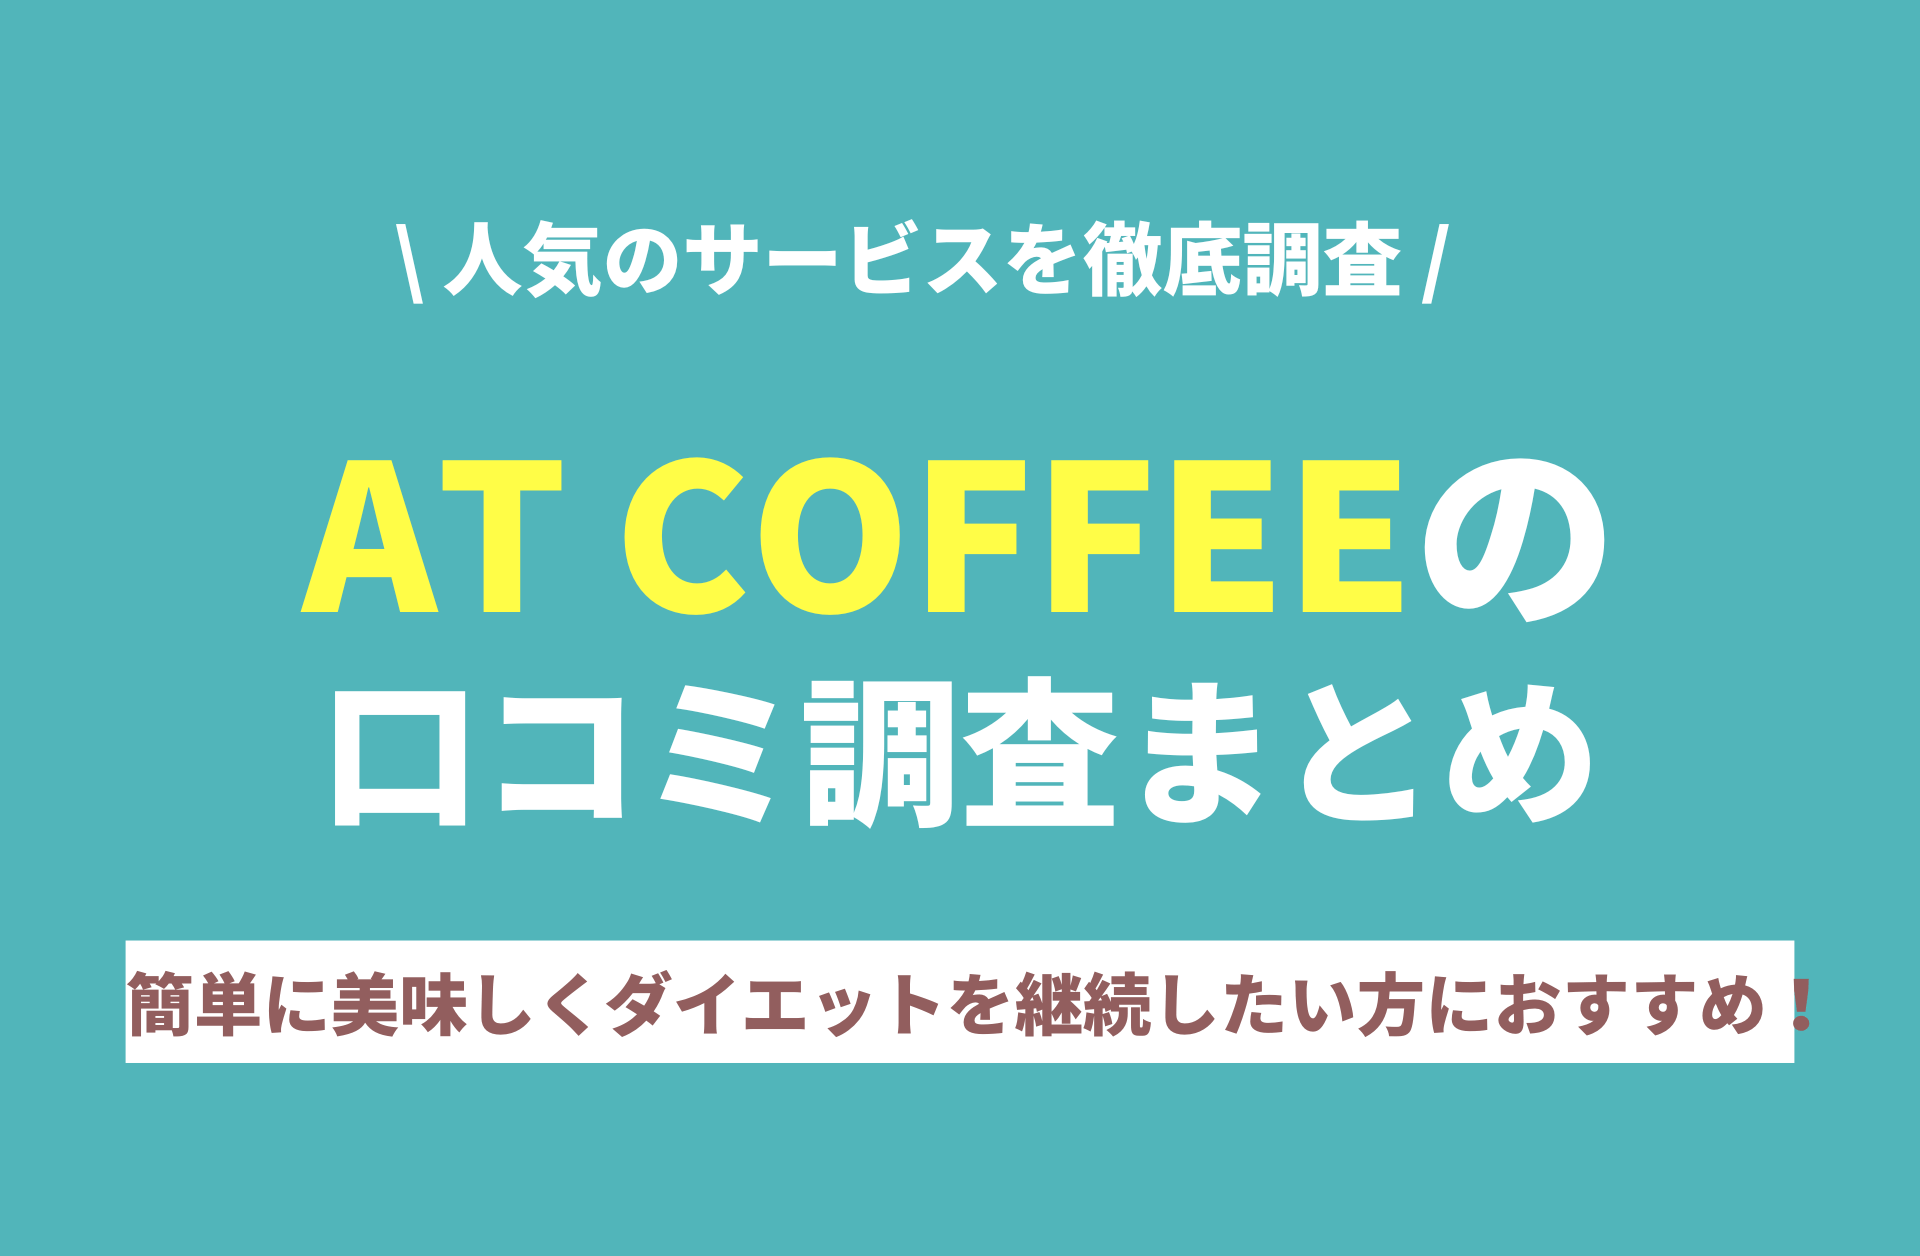 【原価】ダイエットコーヒー AT COFFEE 4点袋 コーヒー